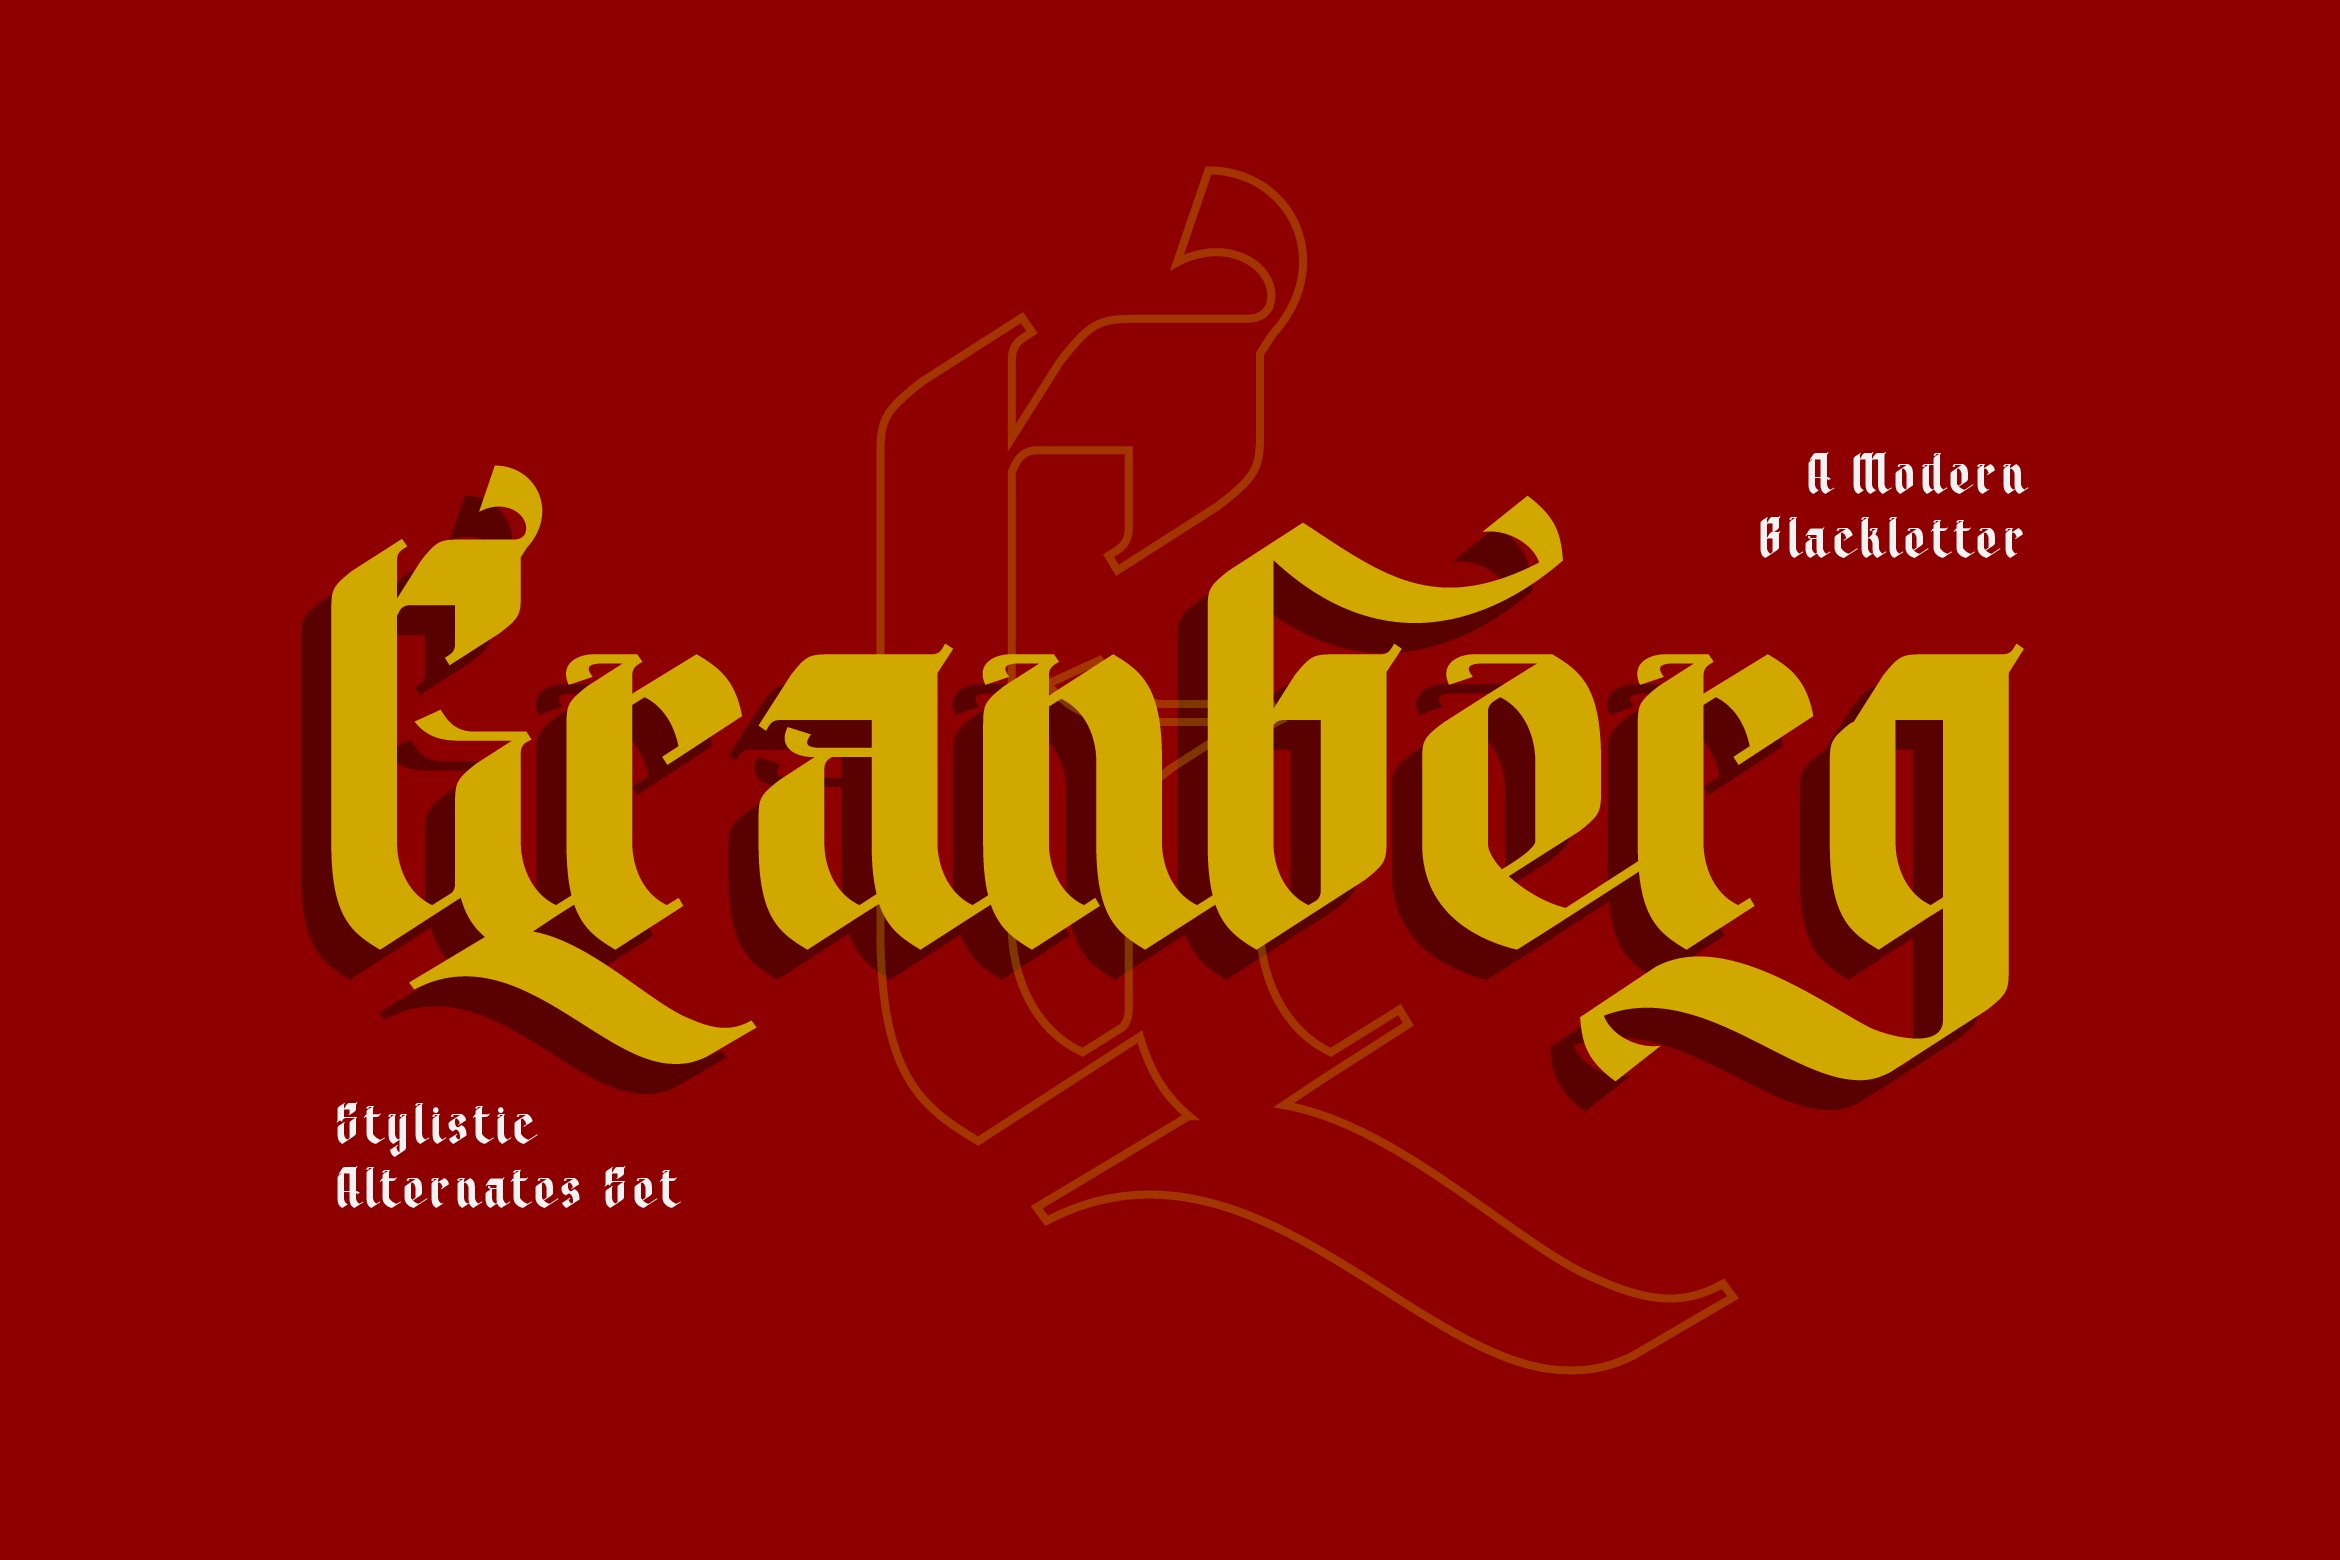 Granberg - Modern Blackletter Font cover image.